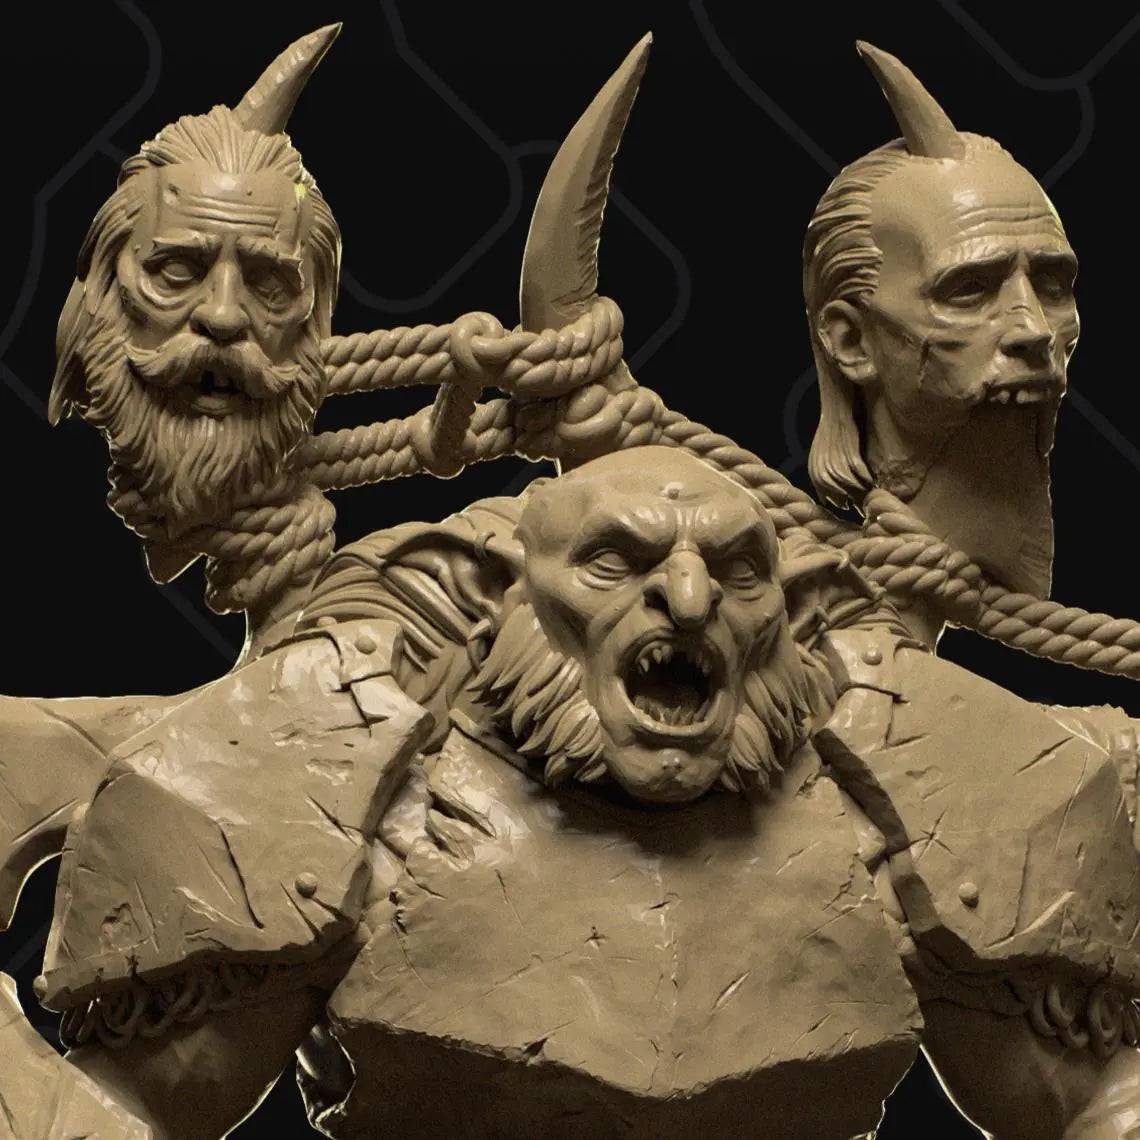 Hobgoblin Wearing Human Heads | D&D TTRPG Monster Miniature | Collective Studio - Tattles Told 3D